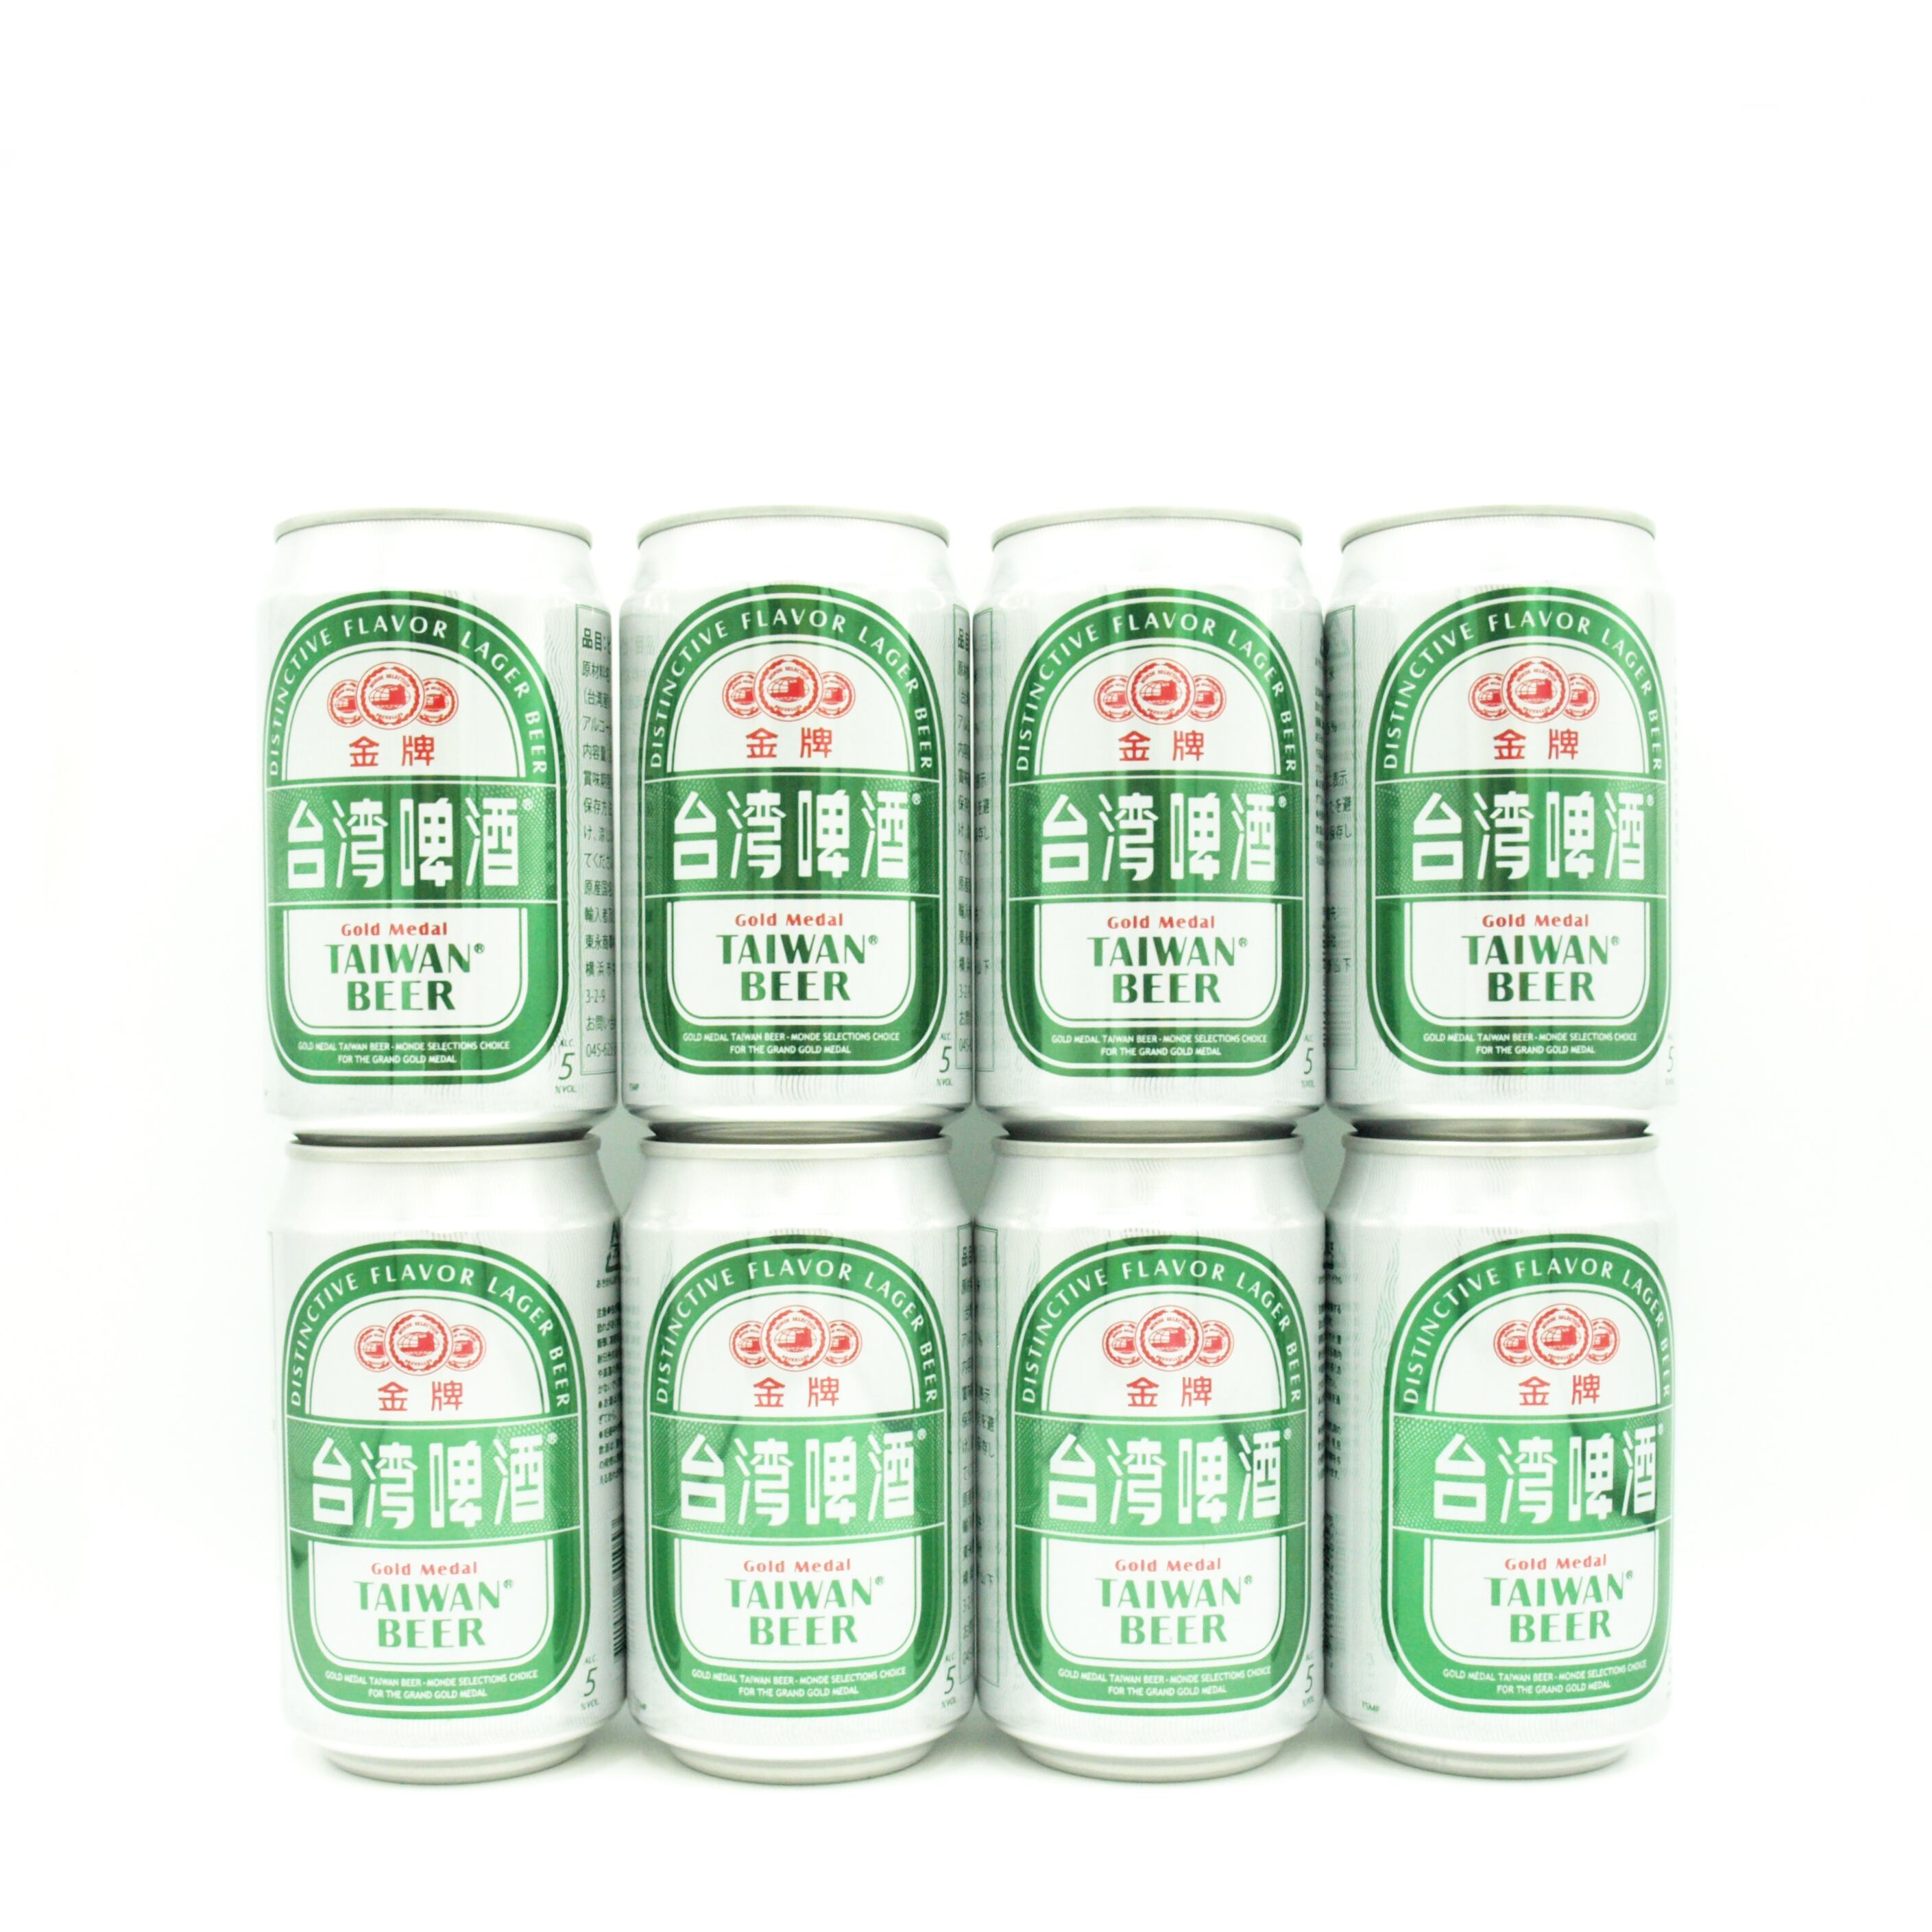 【青豆2種おまけ付】台湾金啤ビール8本セット【送料無料】